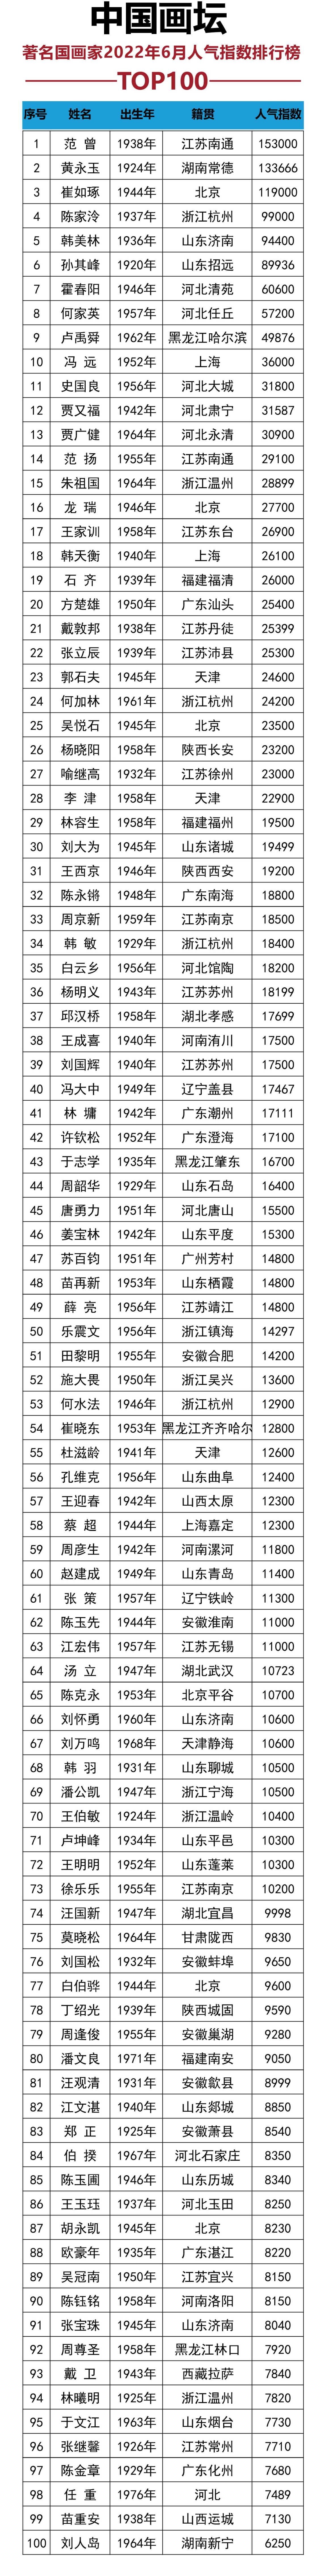 中国画坛著名国画家2022年6月份人气指数排行榜